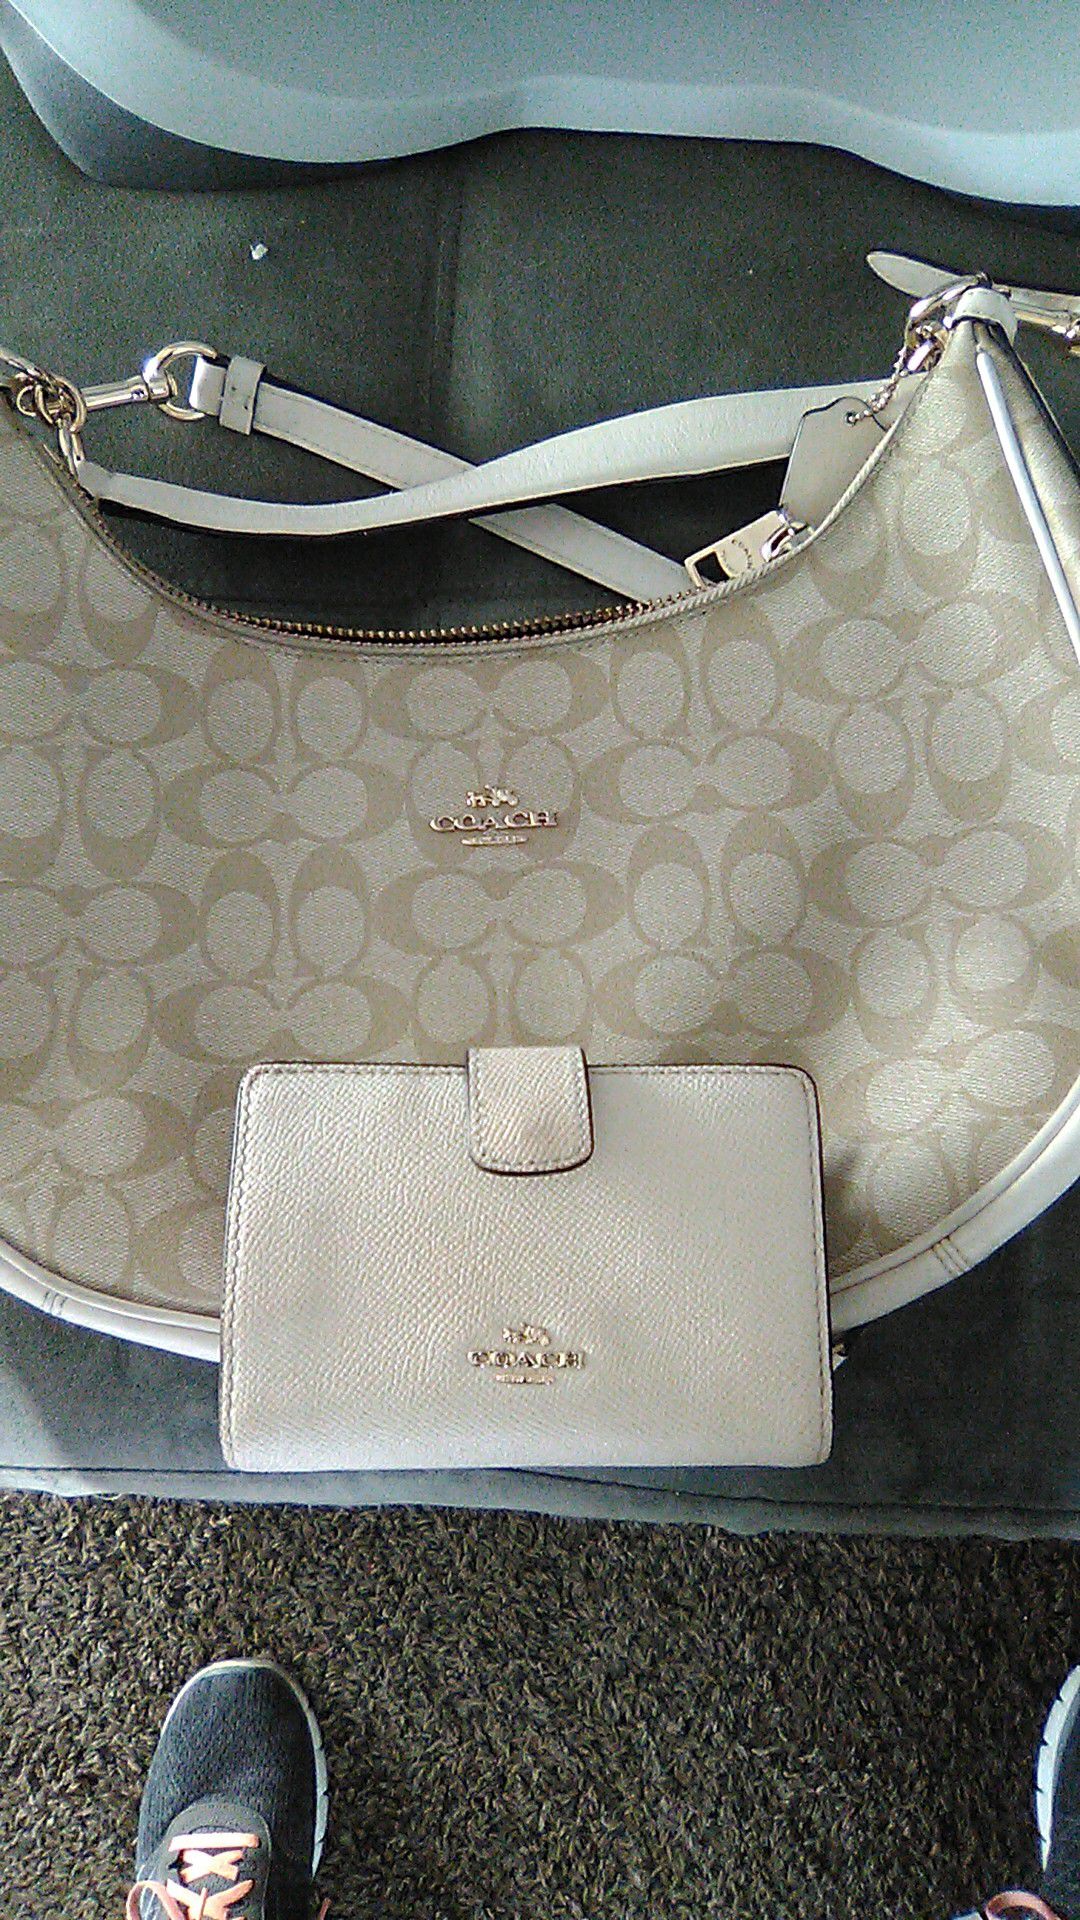 Handbag and matching wallet